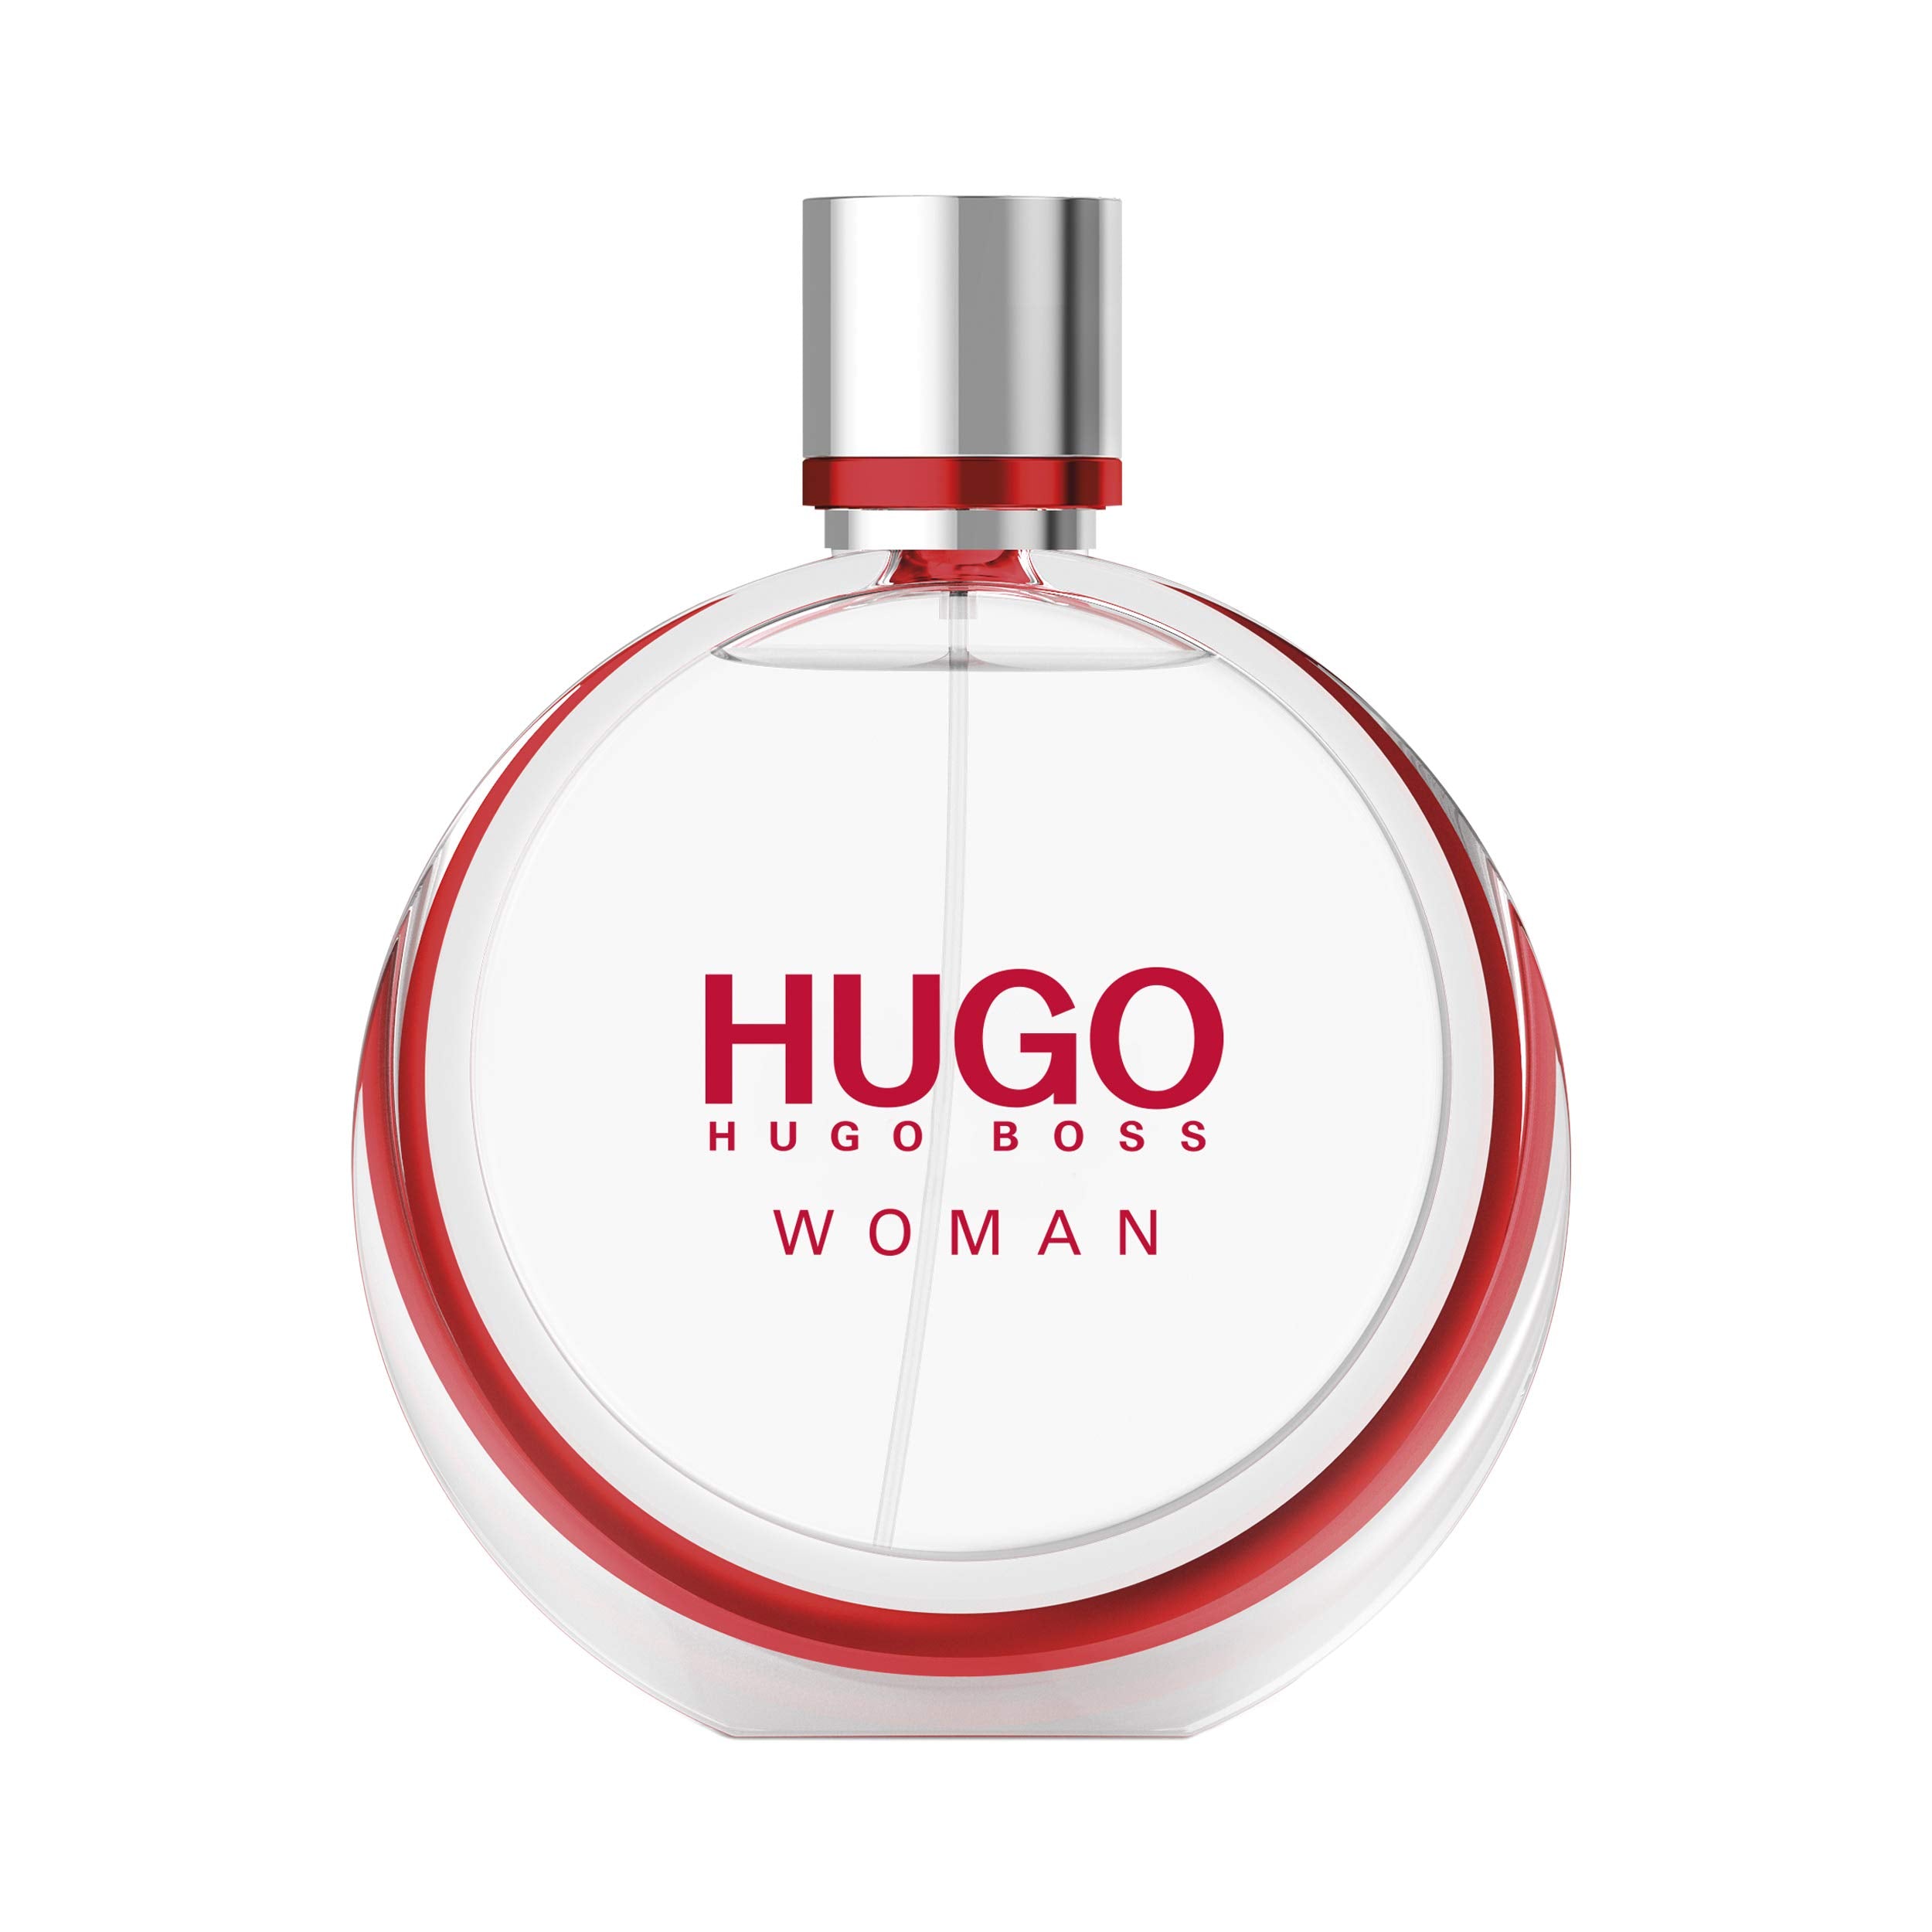 Perfume de Mujer Hugo Boss Cantimplora 75 ML, EDP